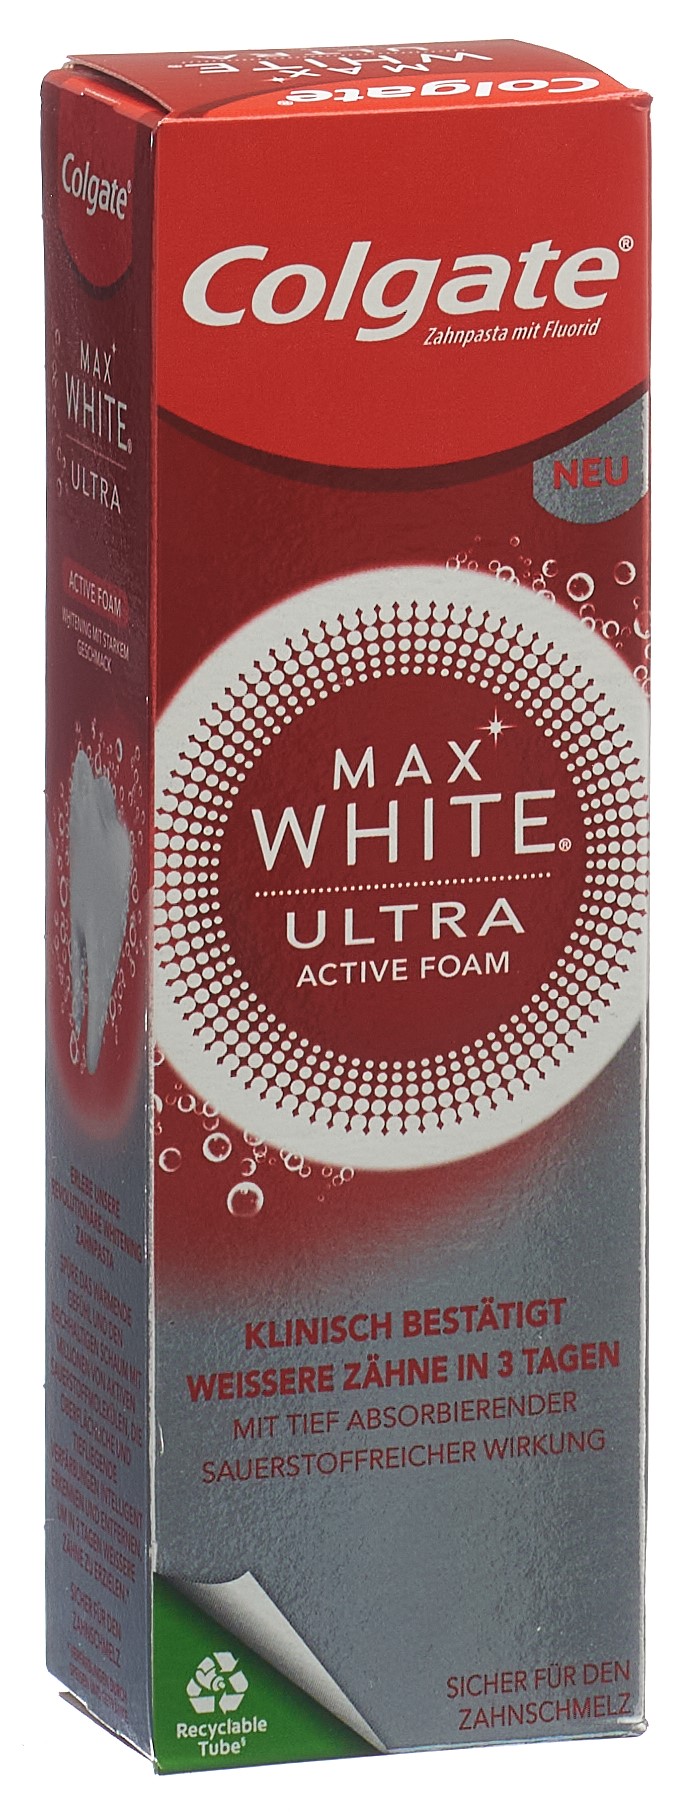 Colgate Max White Ultra Active Foam Zahnpasta (50 ml)